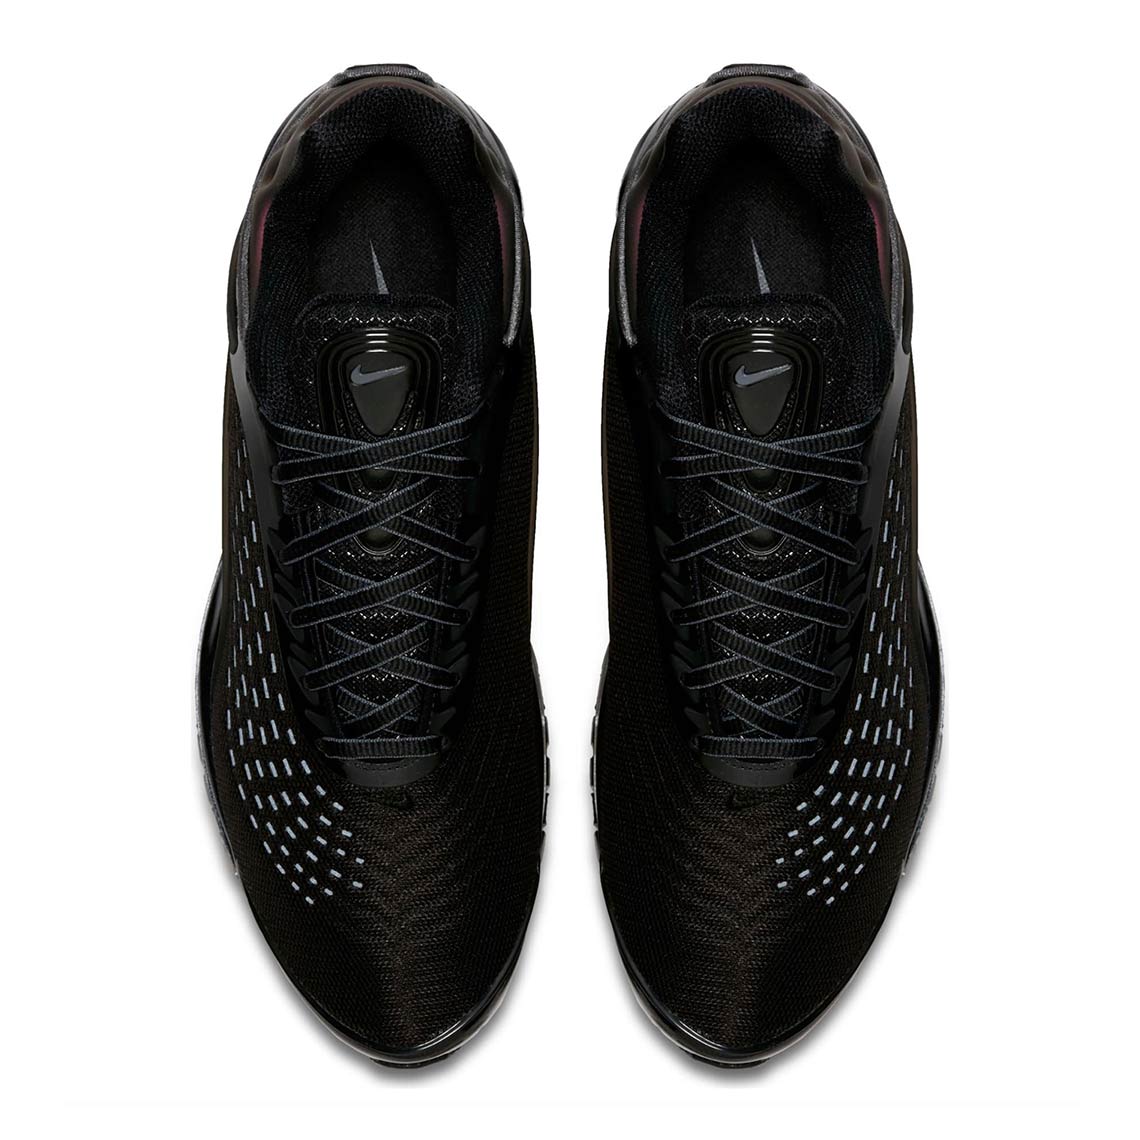 Nike Air Max Deluxe Black Grey AV2589-001 Release Info 